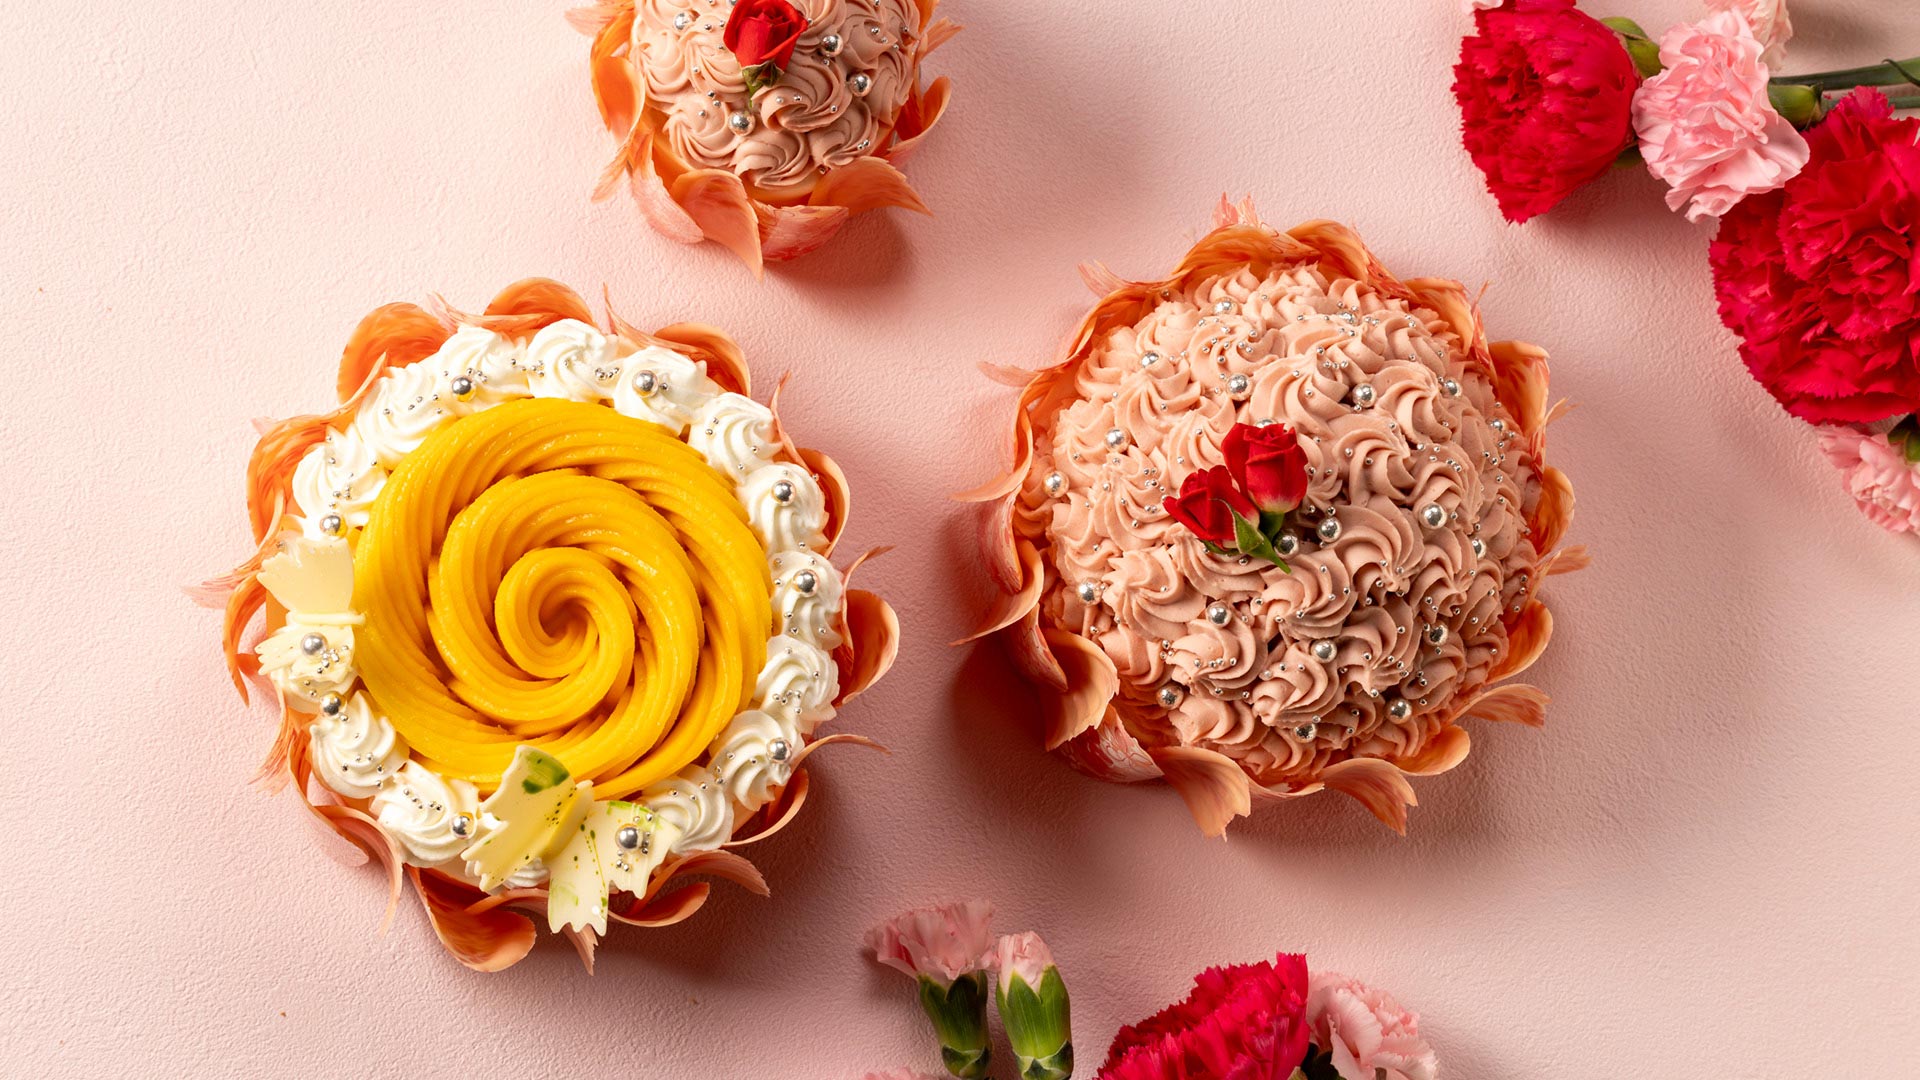 预约受理中~鲜花蛋糕母亲节赠送花束般的蛋糕